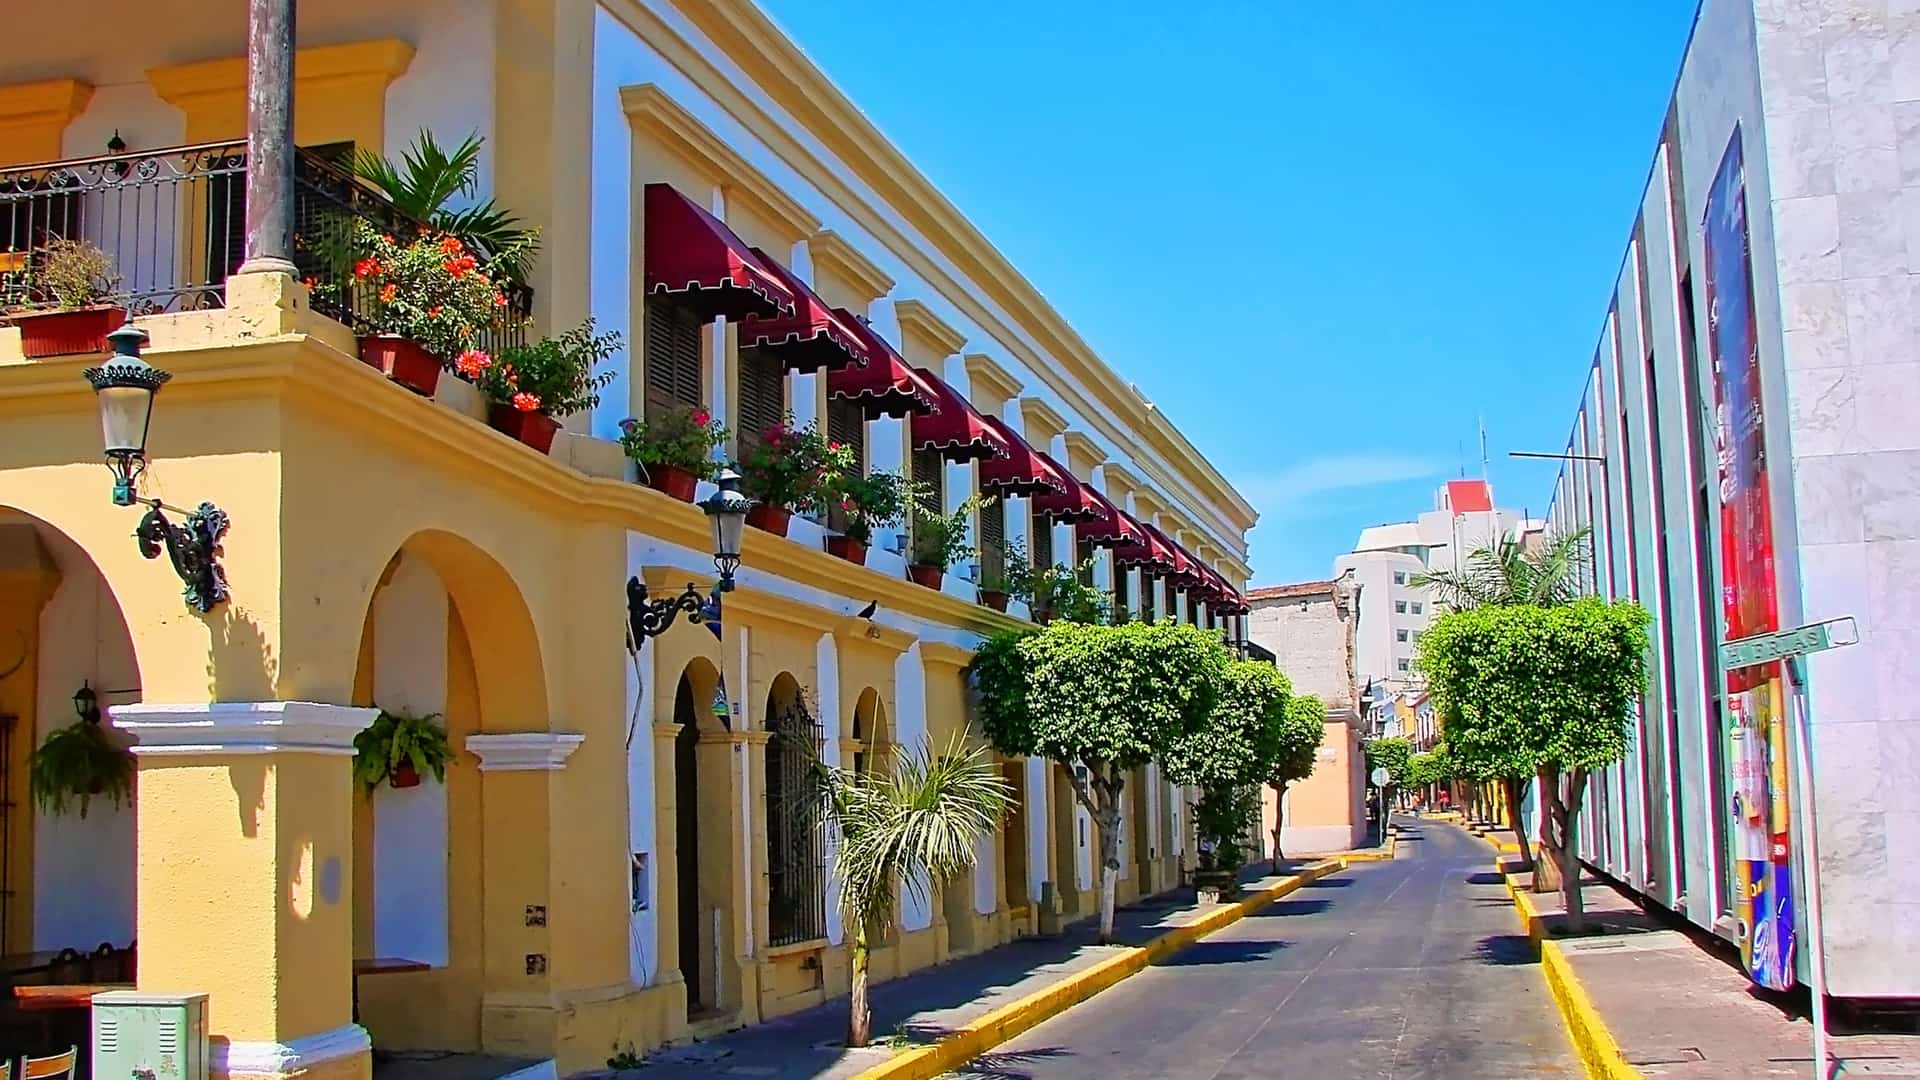 calles de mazatlan mexico que es una localidad en la que se pueden encontarar sucursales de megacable